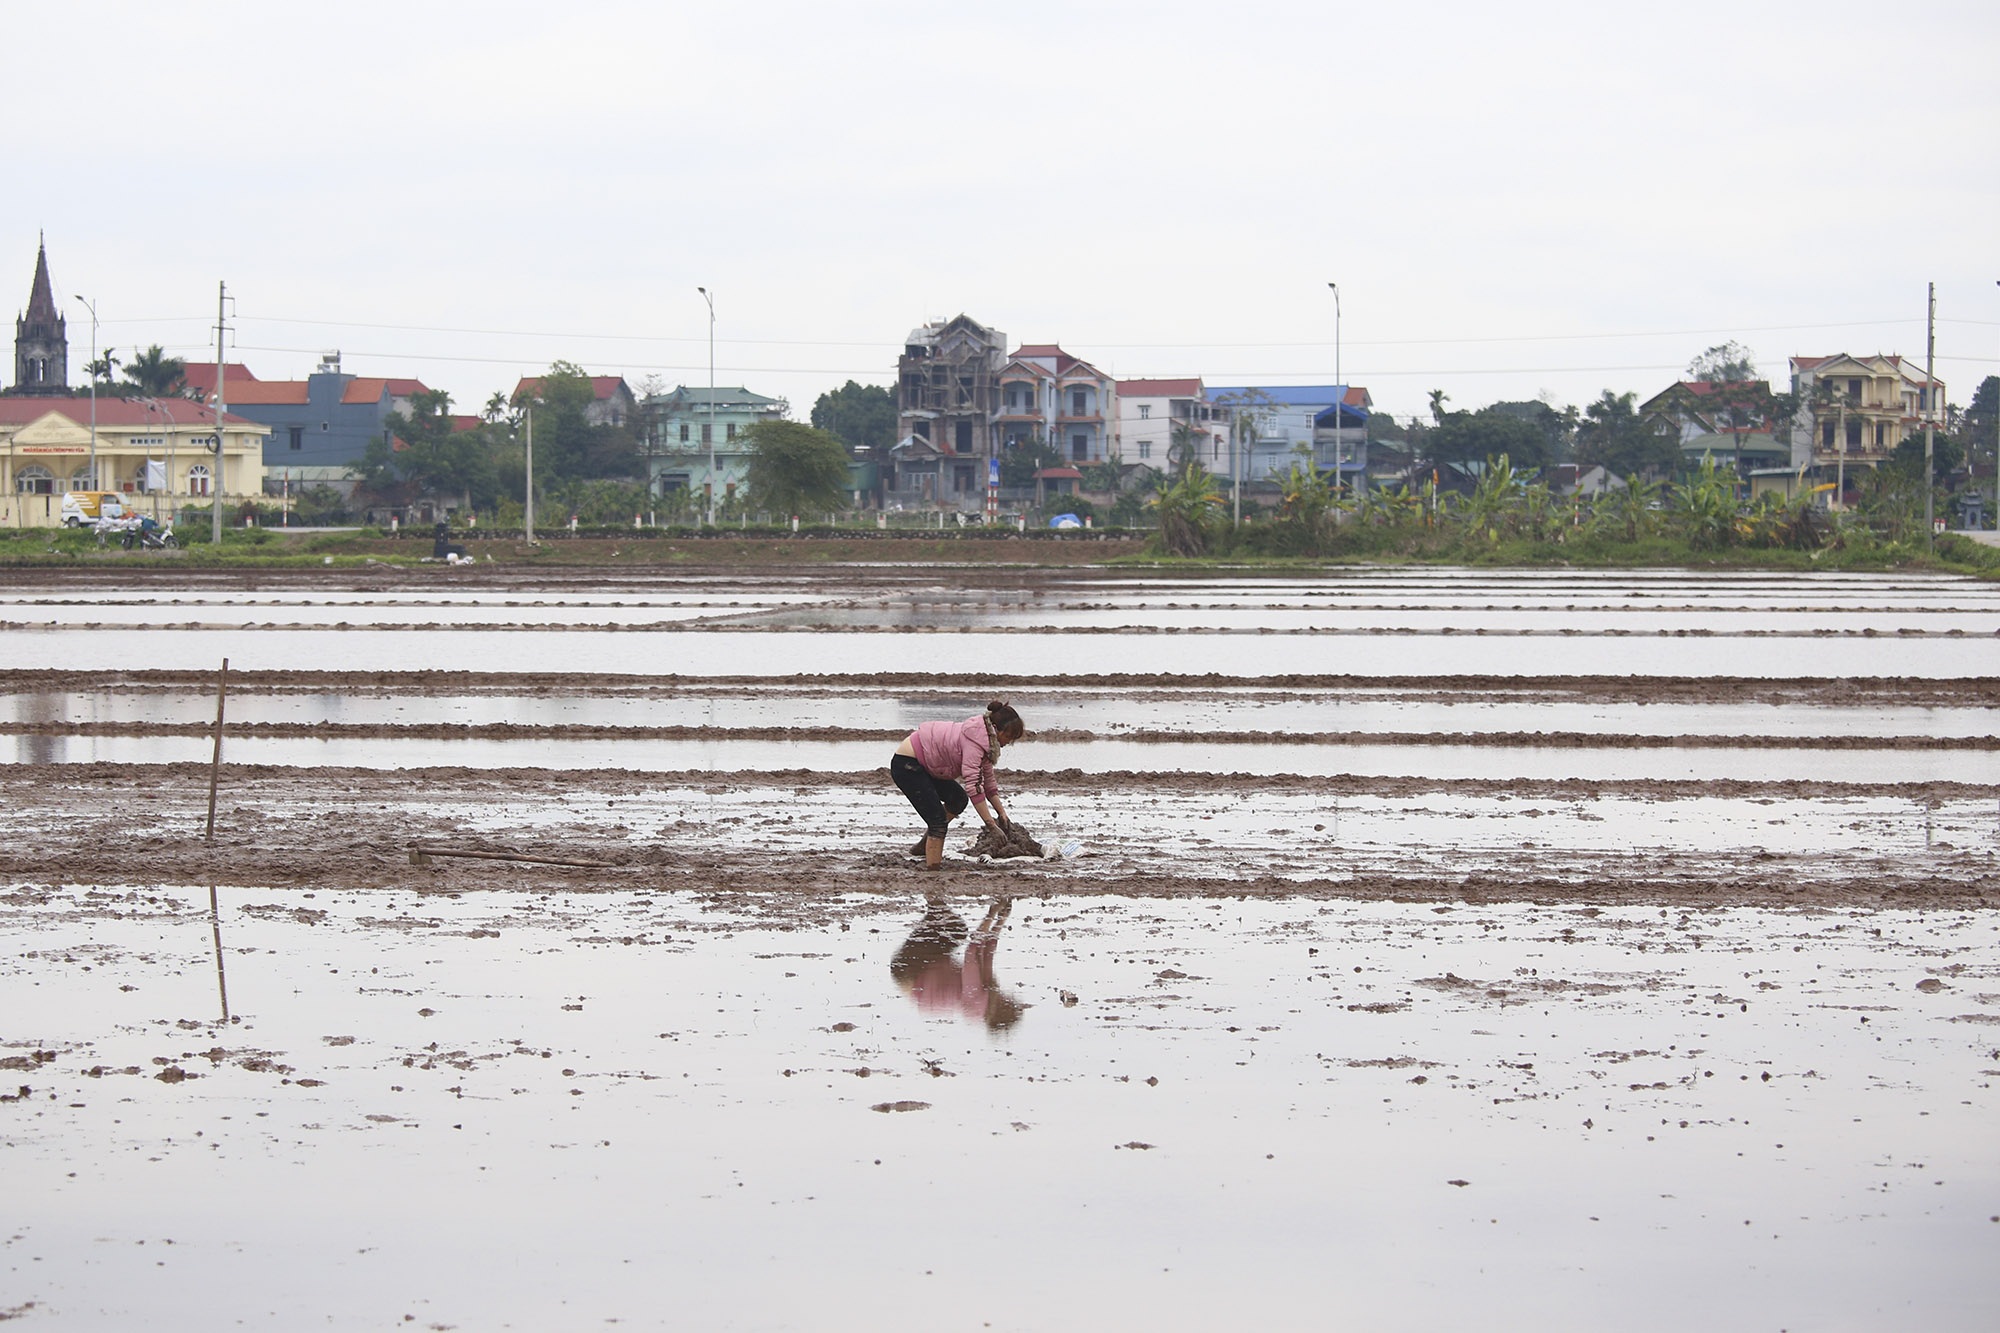 Nông dân ngoại thành bì bõm lội ruộng cấy lúa trong giá rét thấu xương - 15